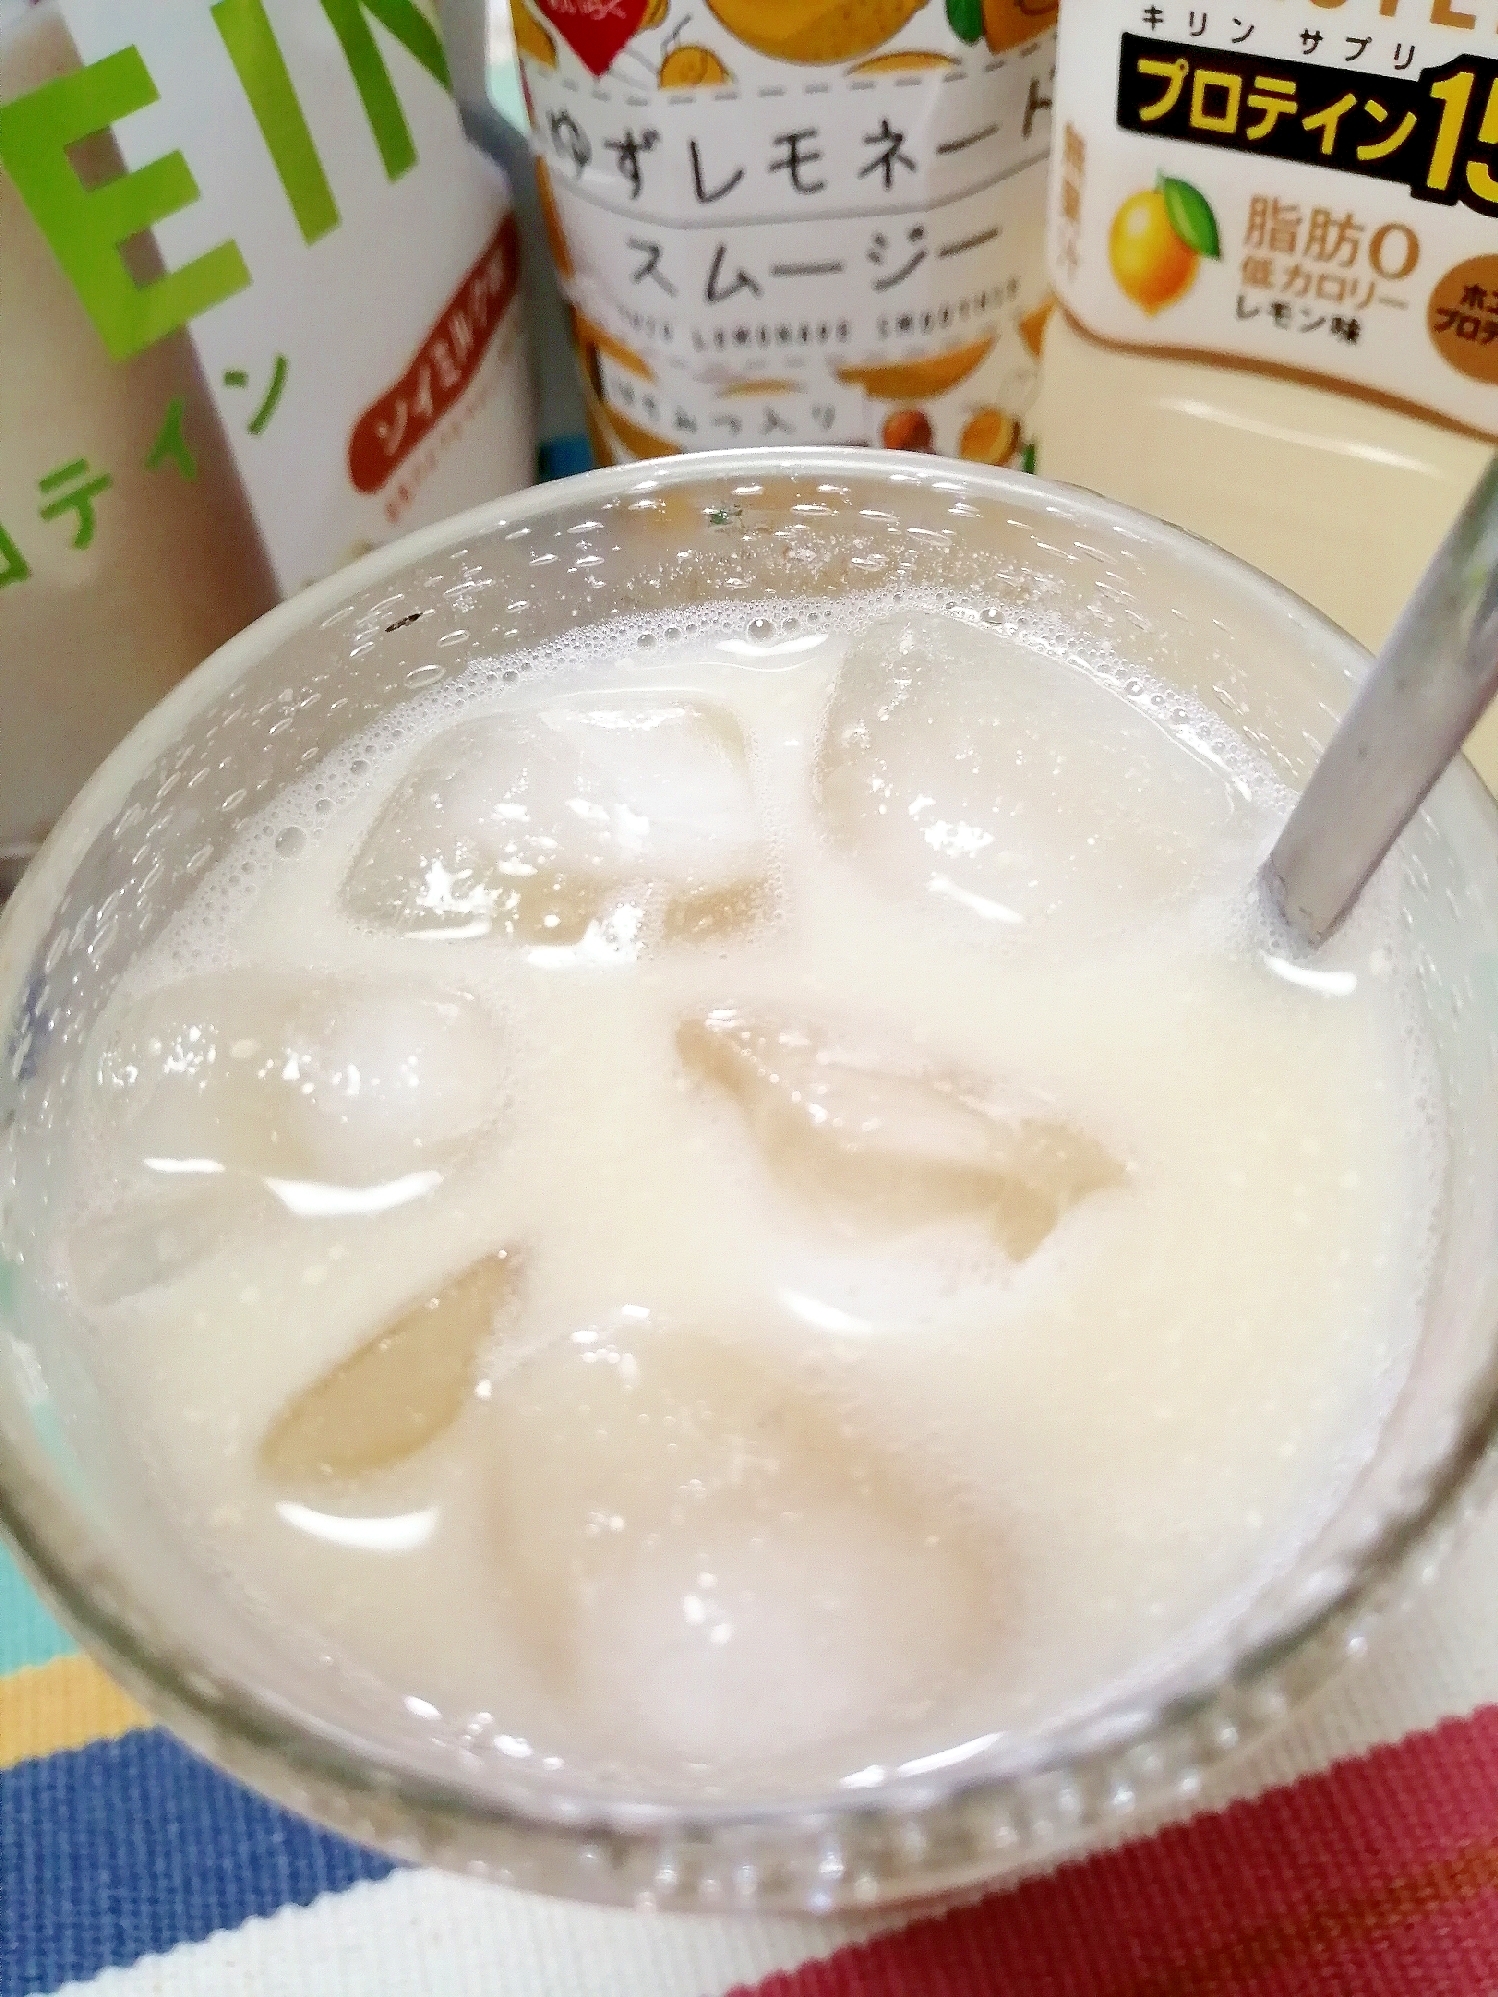 アイス☆ゆずレモネードプロテインミルク風♪